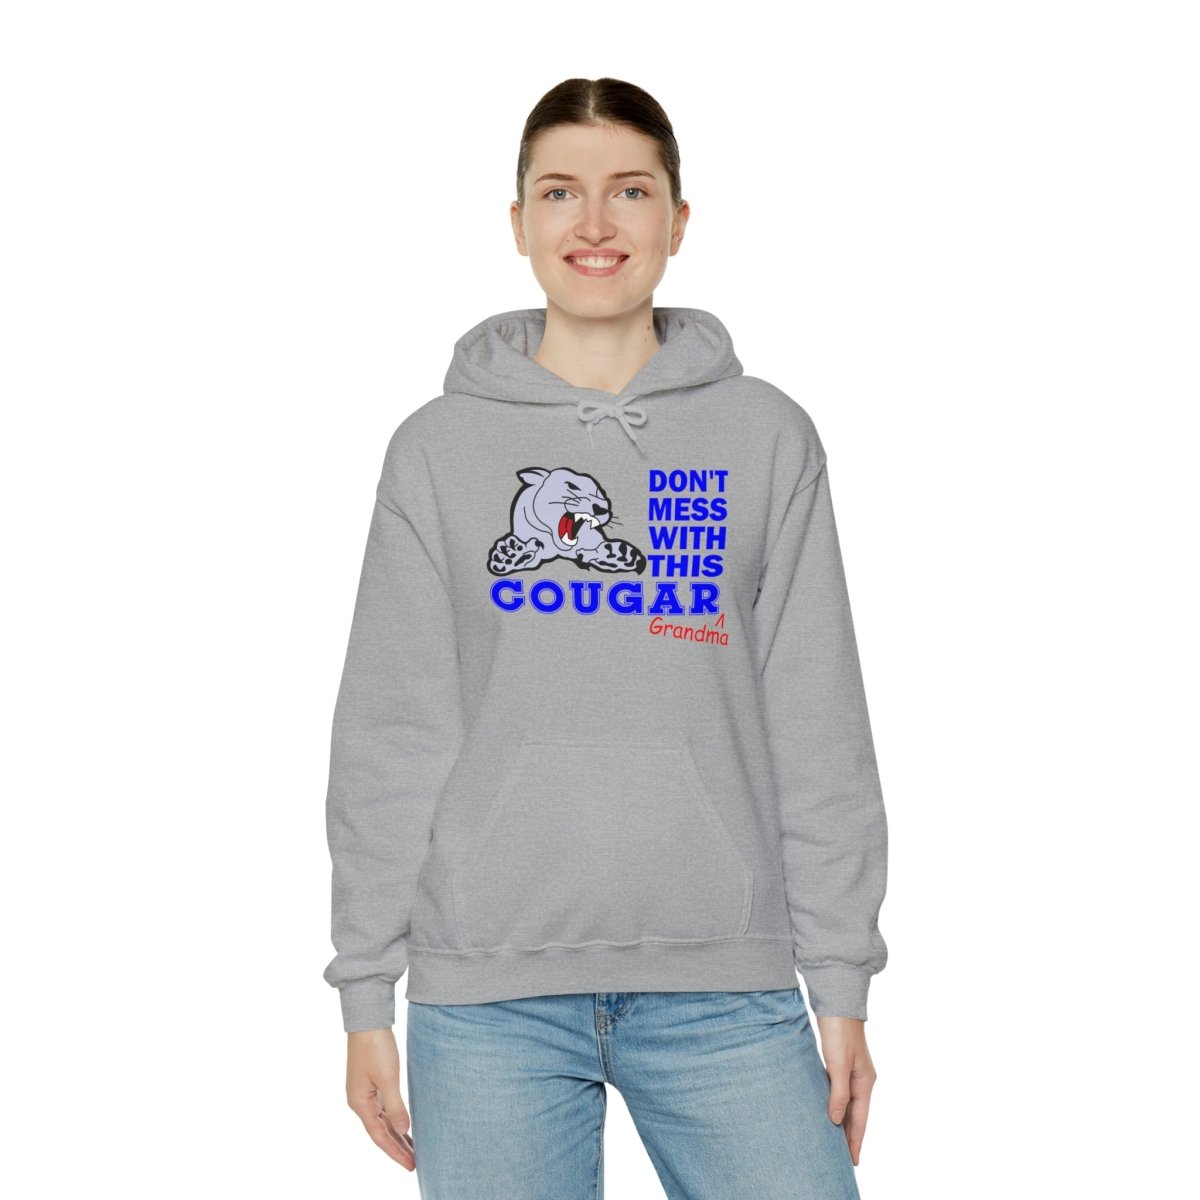 Cougar Grandma Hooded Sweatshirt